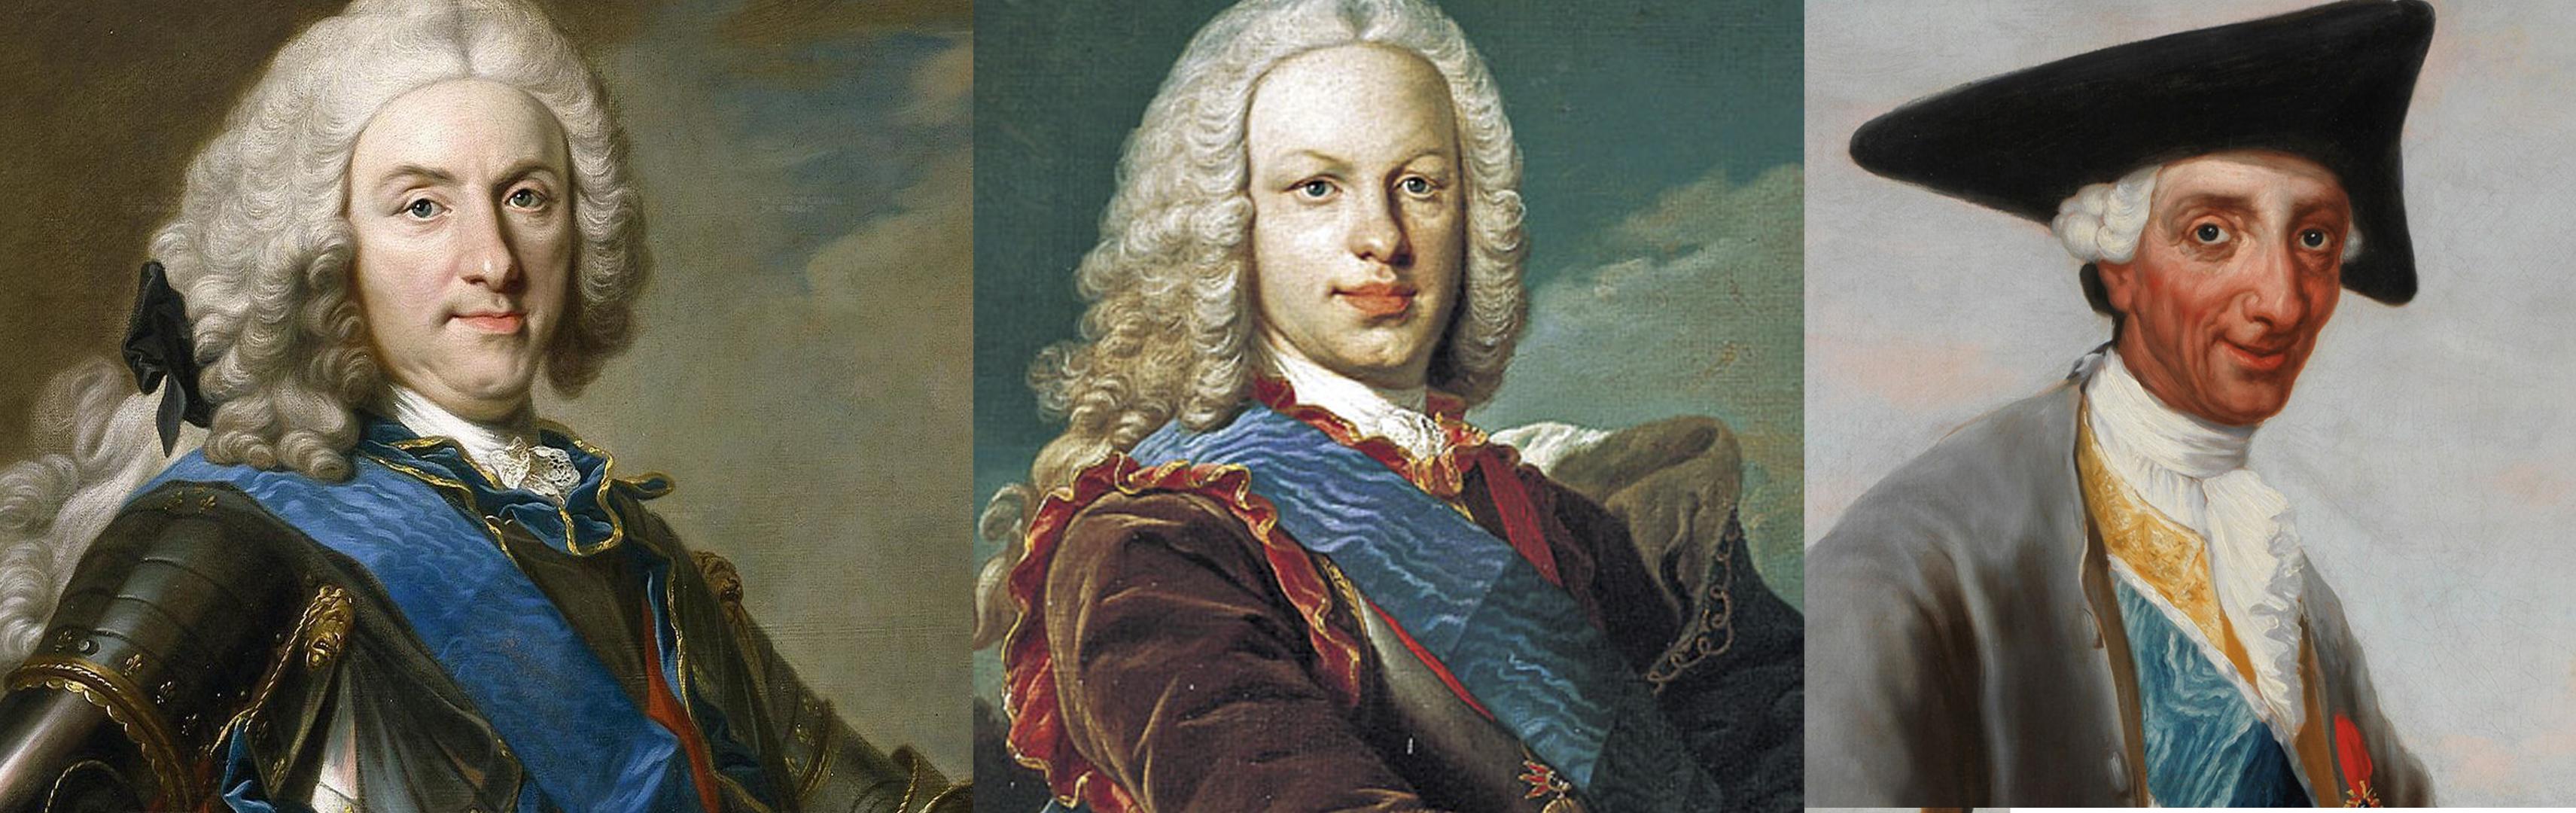 En la mayoría de retratos Carlos III aparece mucho más moreno que su padre o hermanos ¿Por qué razón?